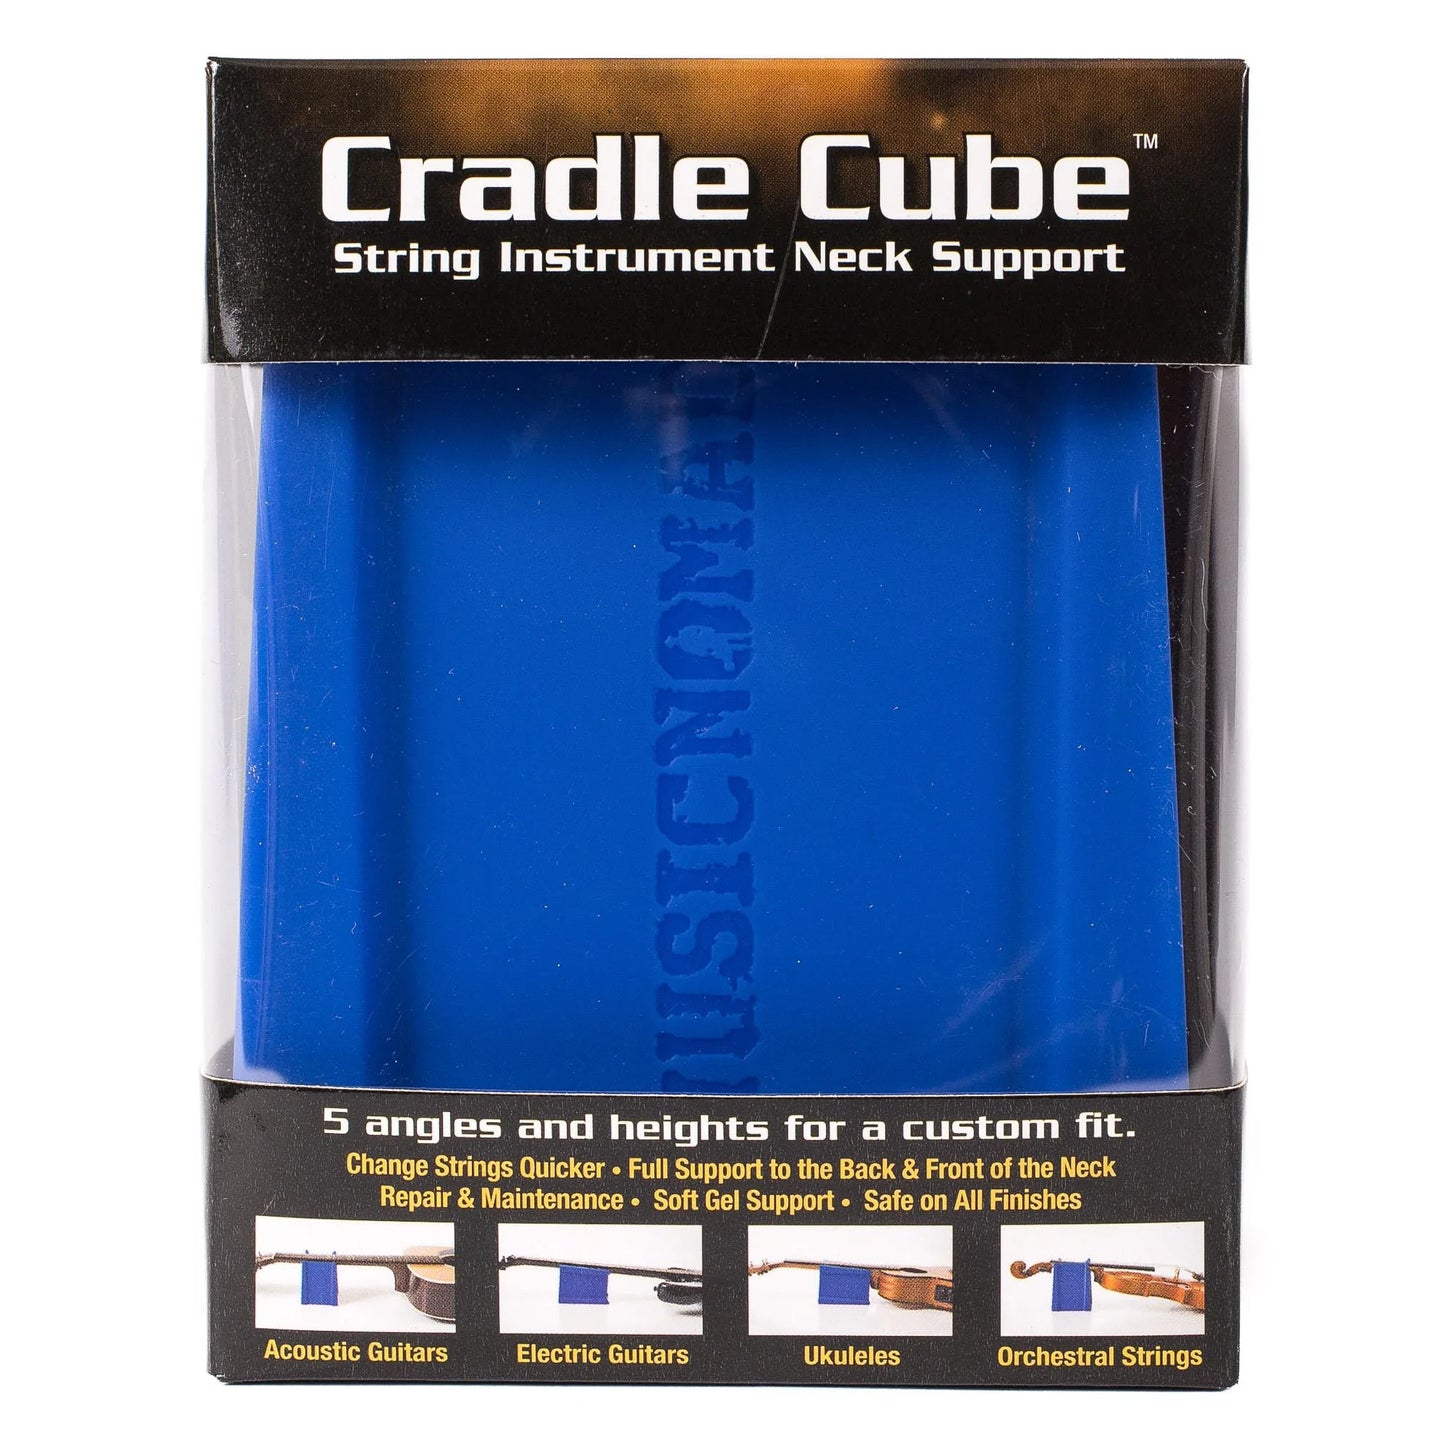 Cradle Cube